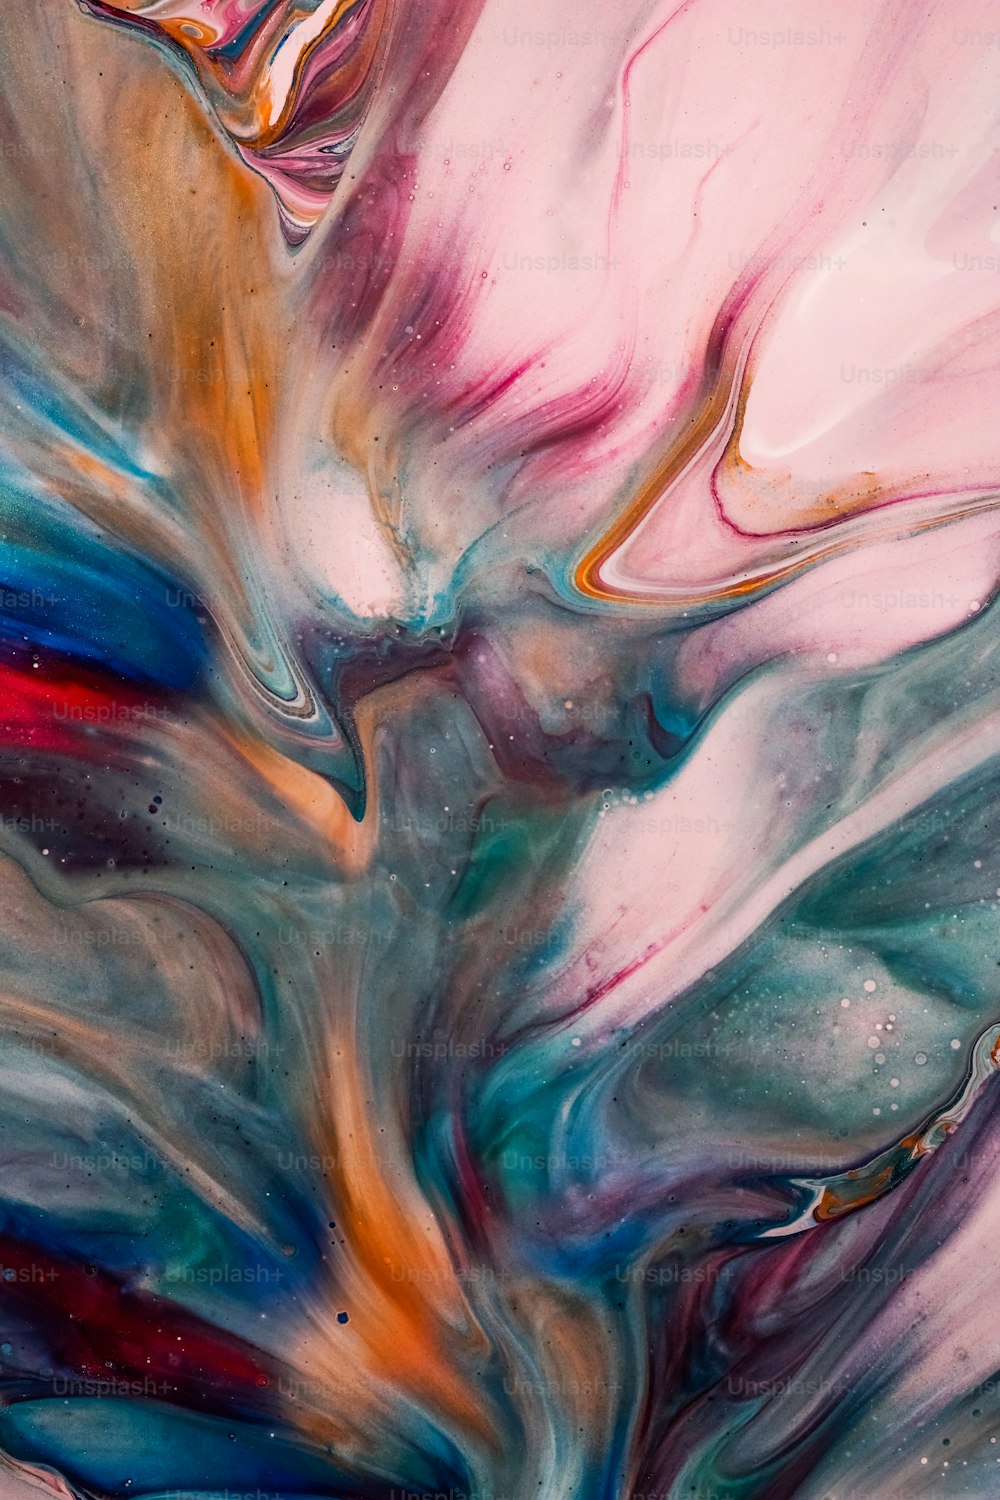 Une peinture abstraite avec différentes couleurs et formes